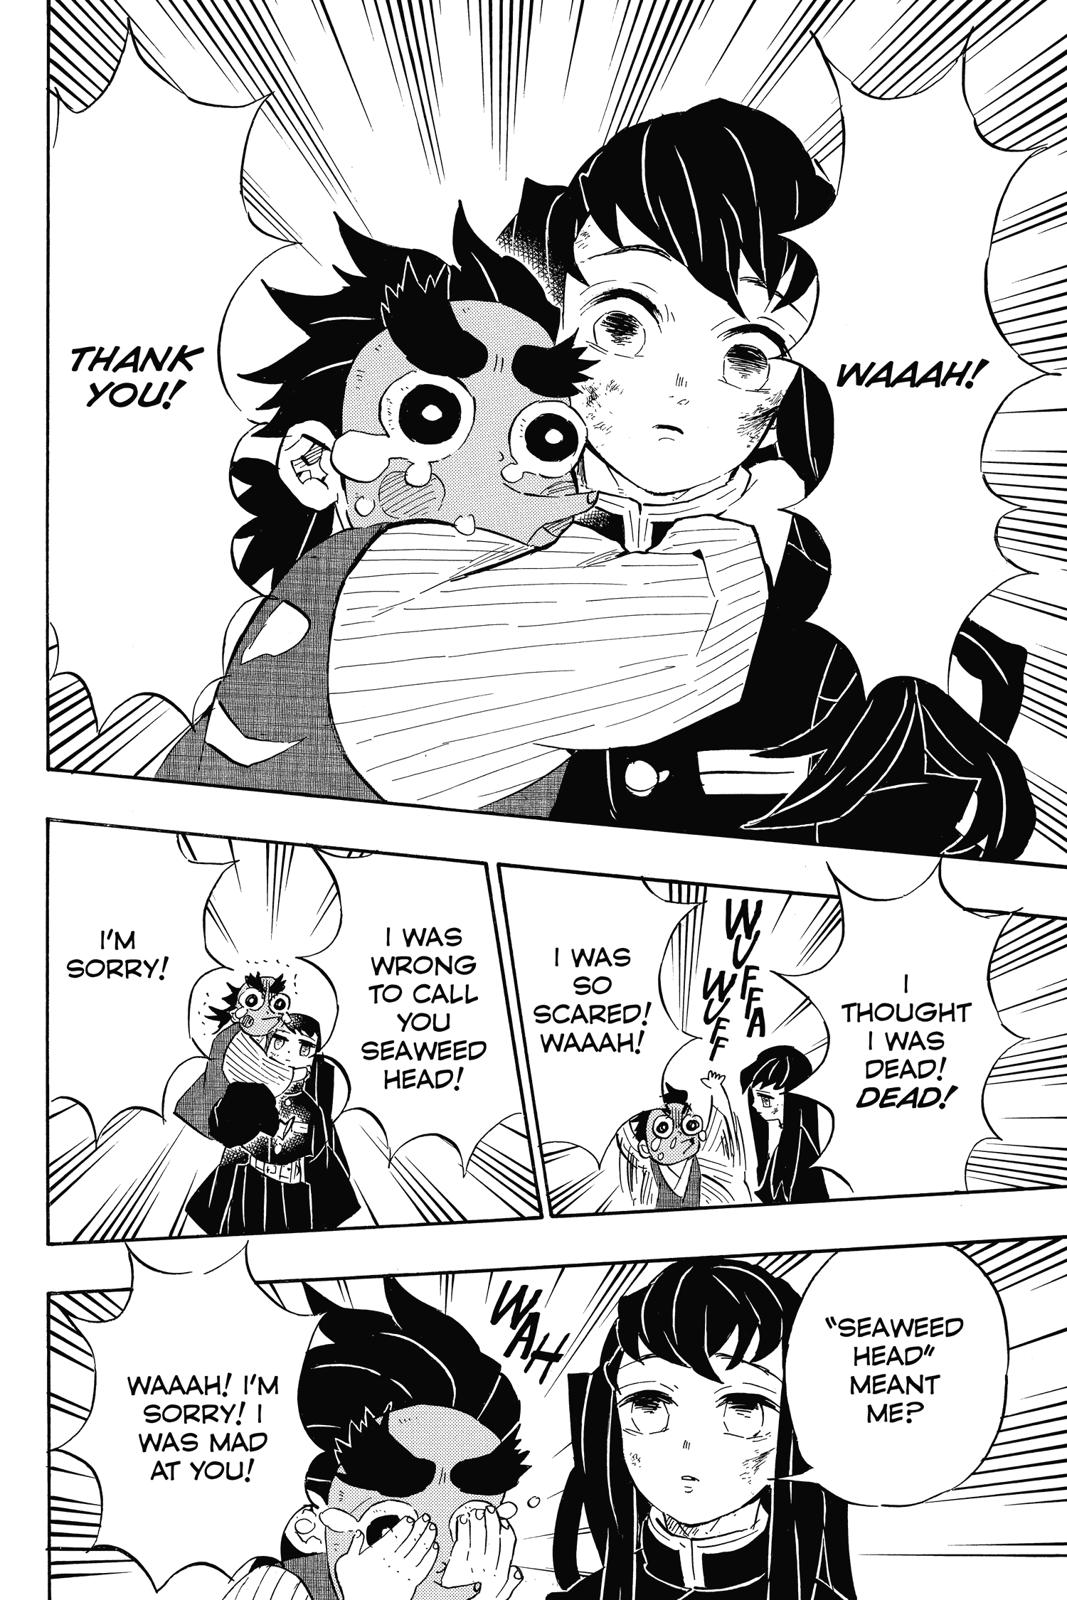 Demon Slayer Manga Manga Chapter - 108 - image 2